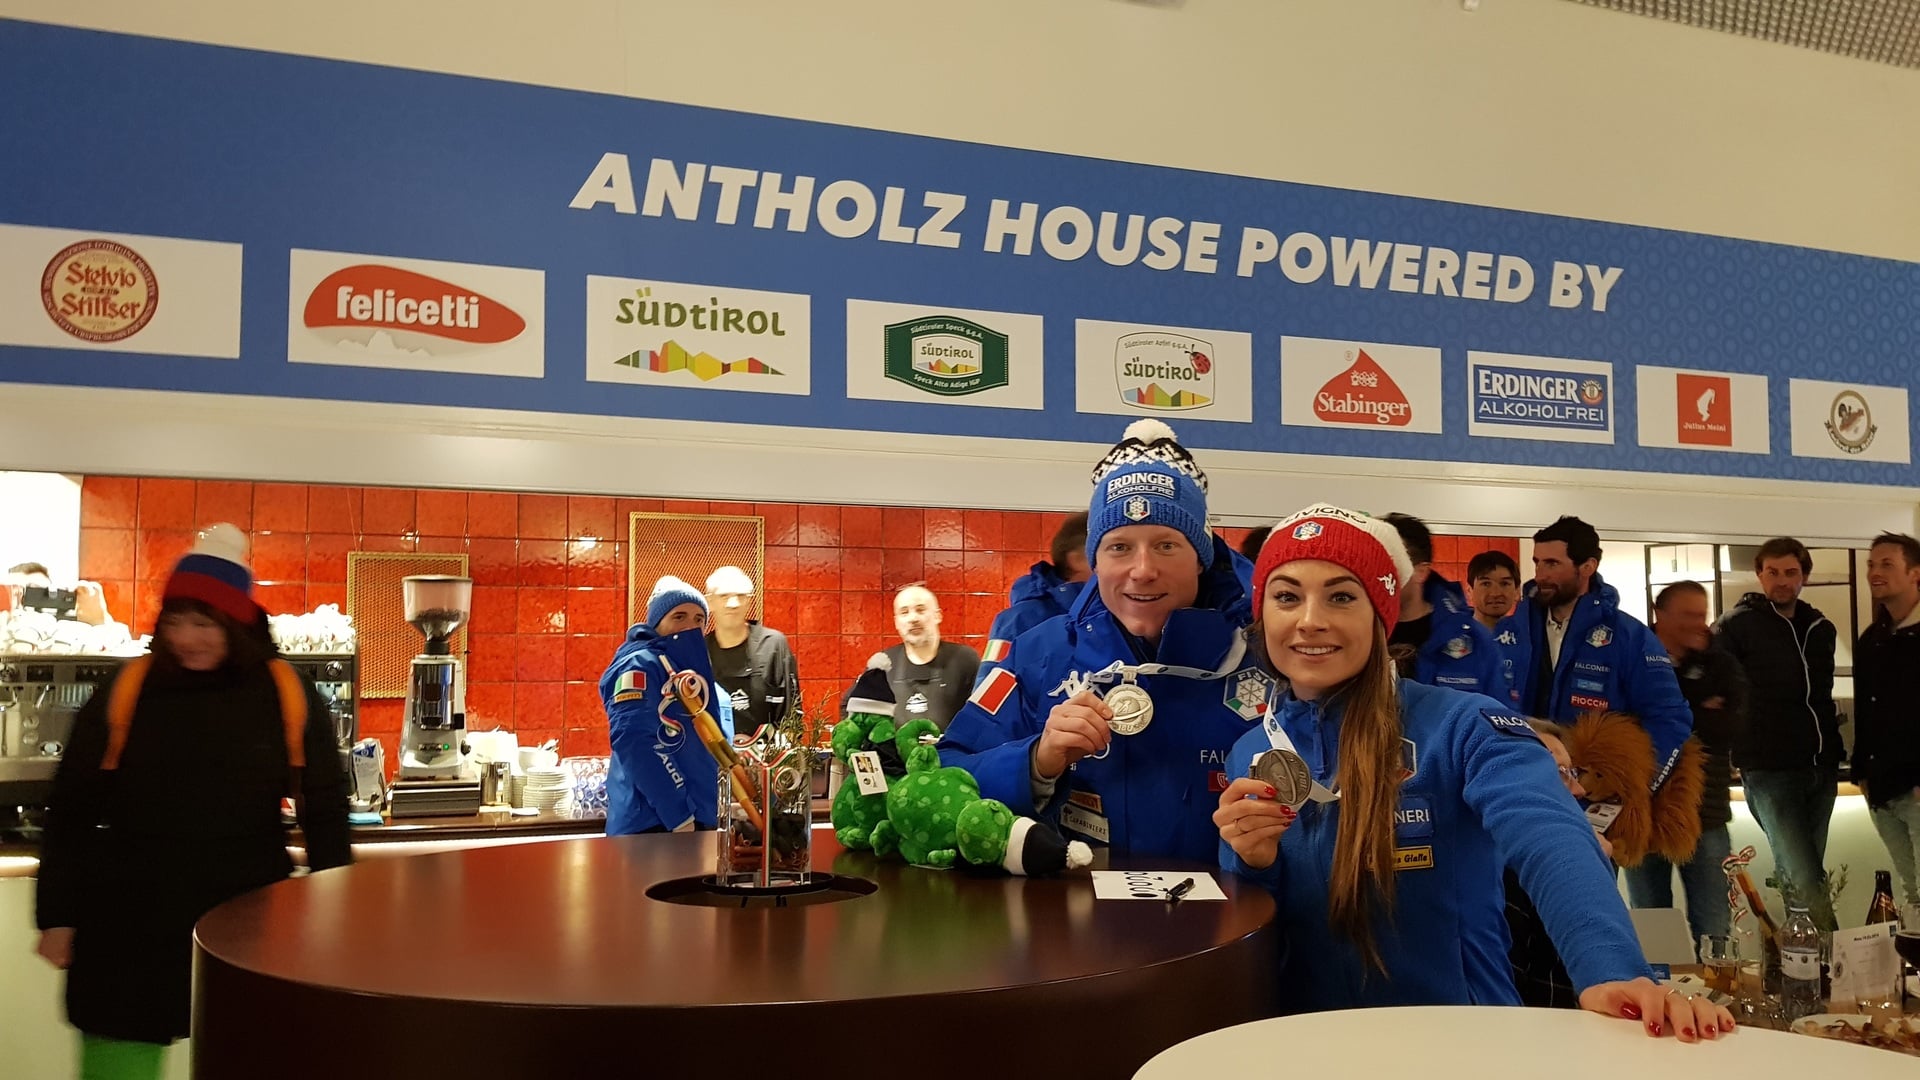 15.03.2019 - Festliche Atmosphäre gestern Abend im Antholz House für das gesamte italienische Team und die Mitarbeiter des Restaurants